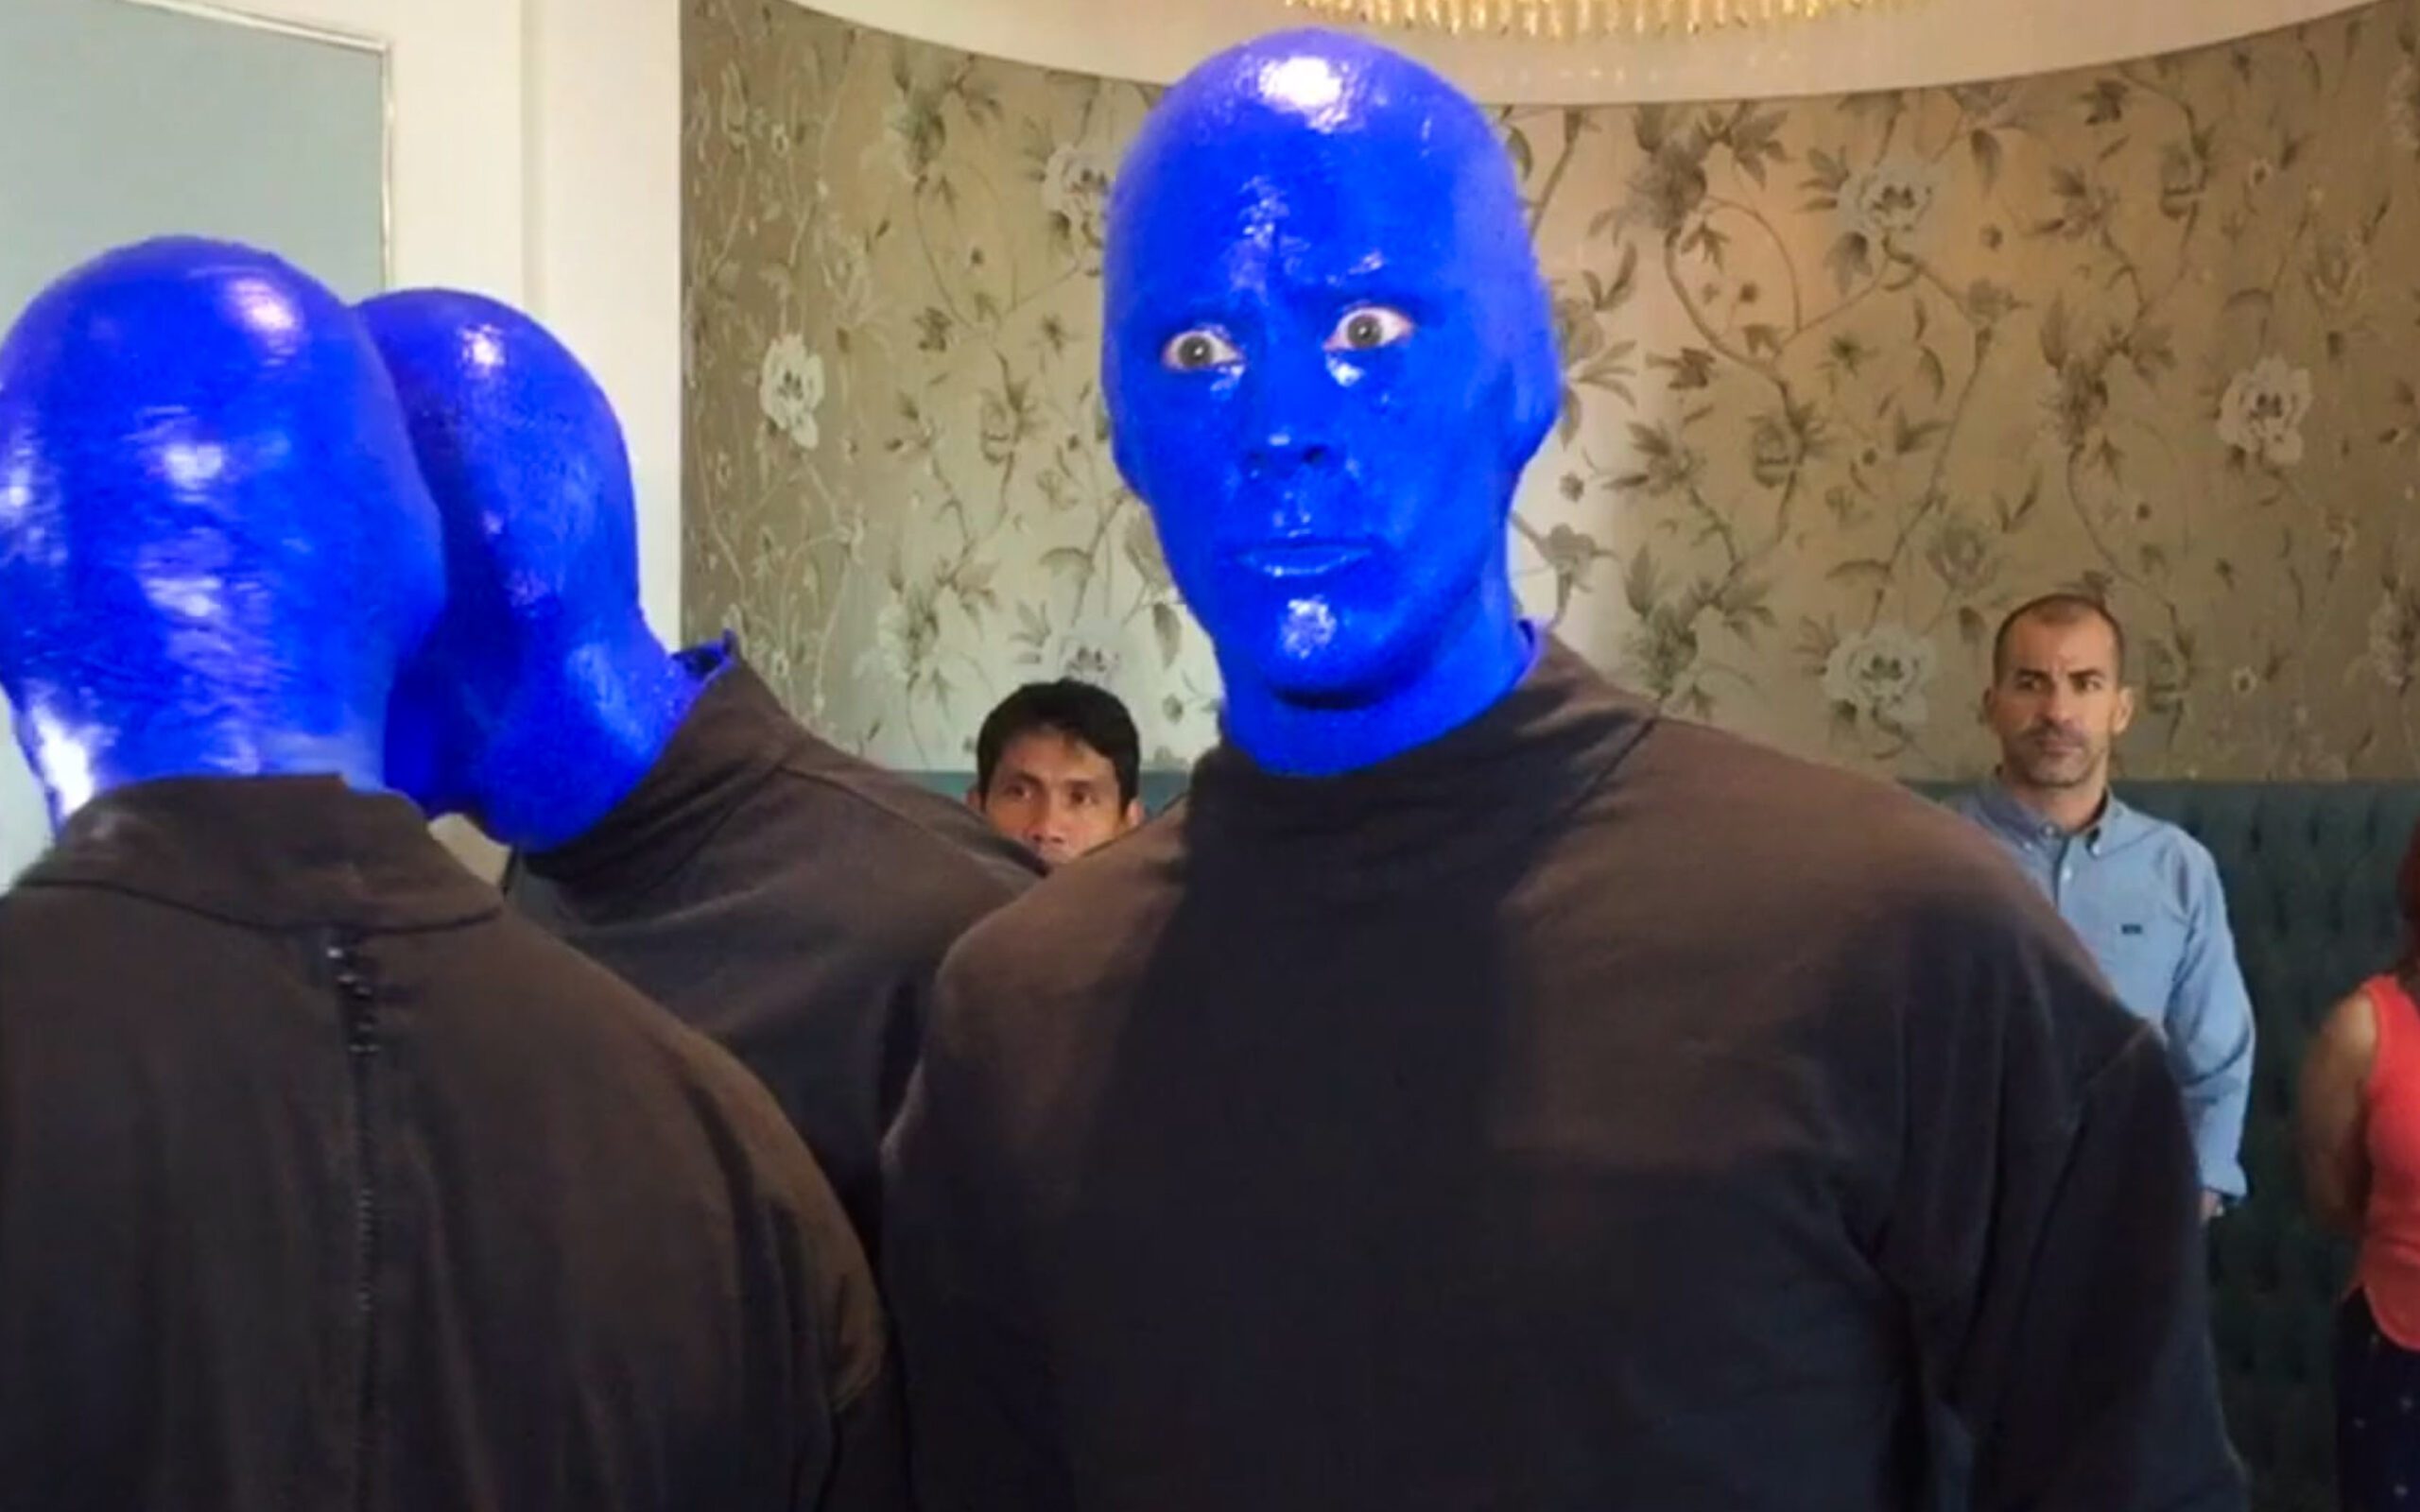 Sneak peek: Blue Man Group’s energetic, interactive performance in Manila